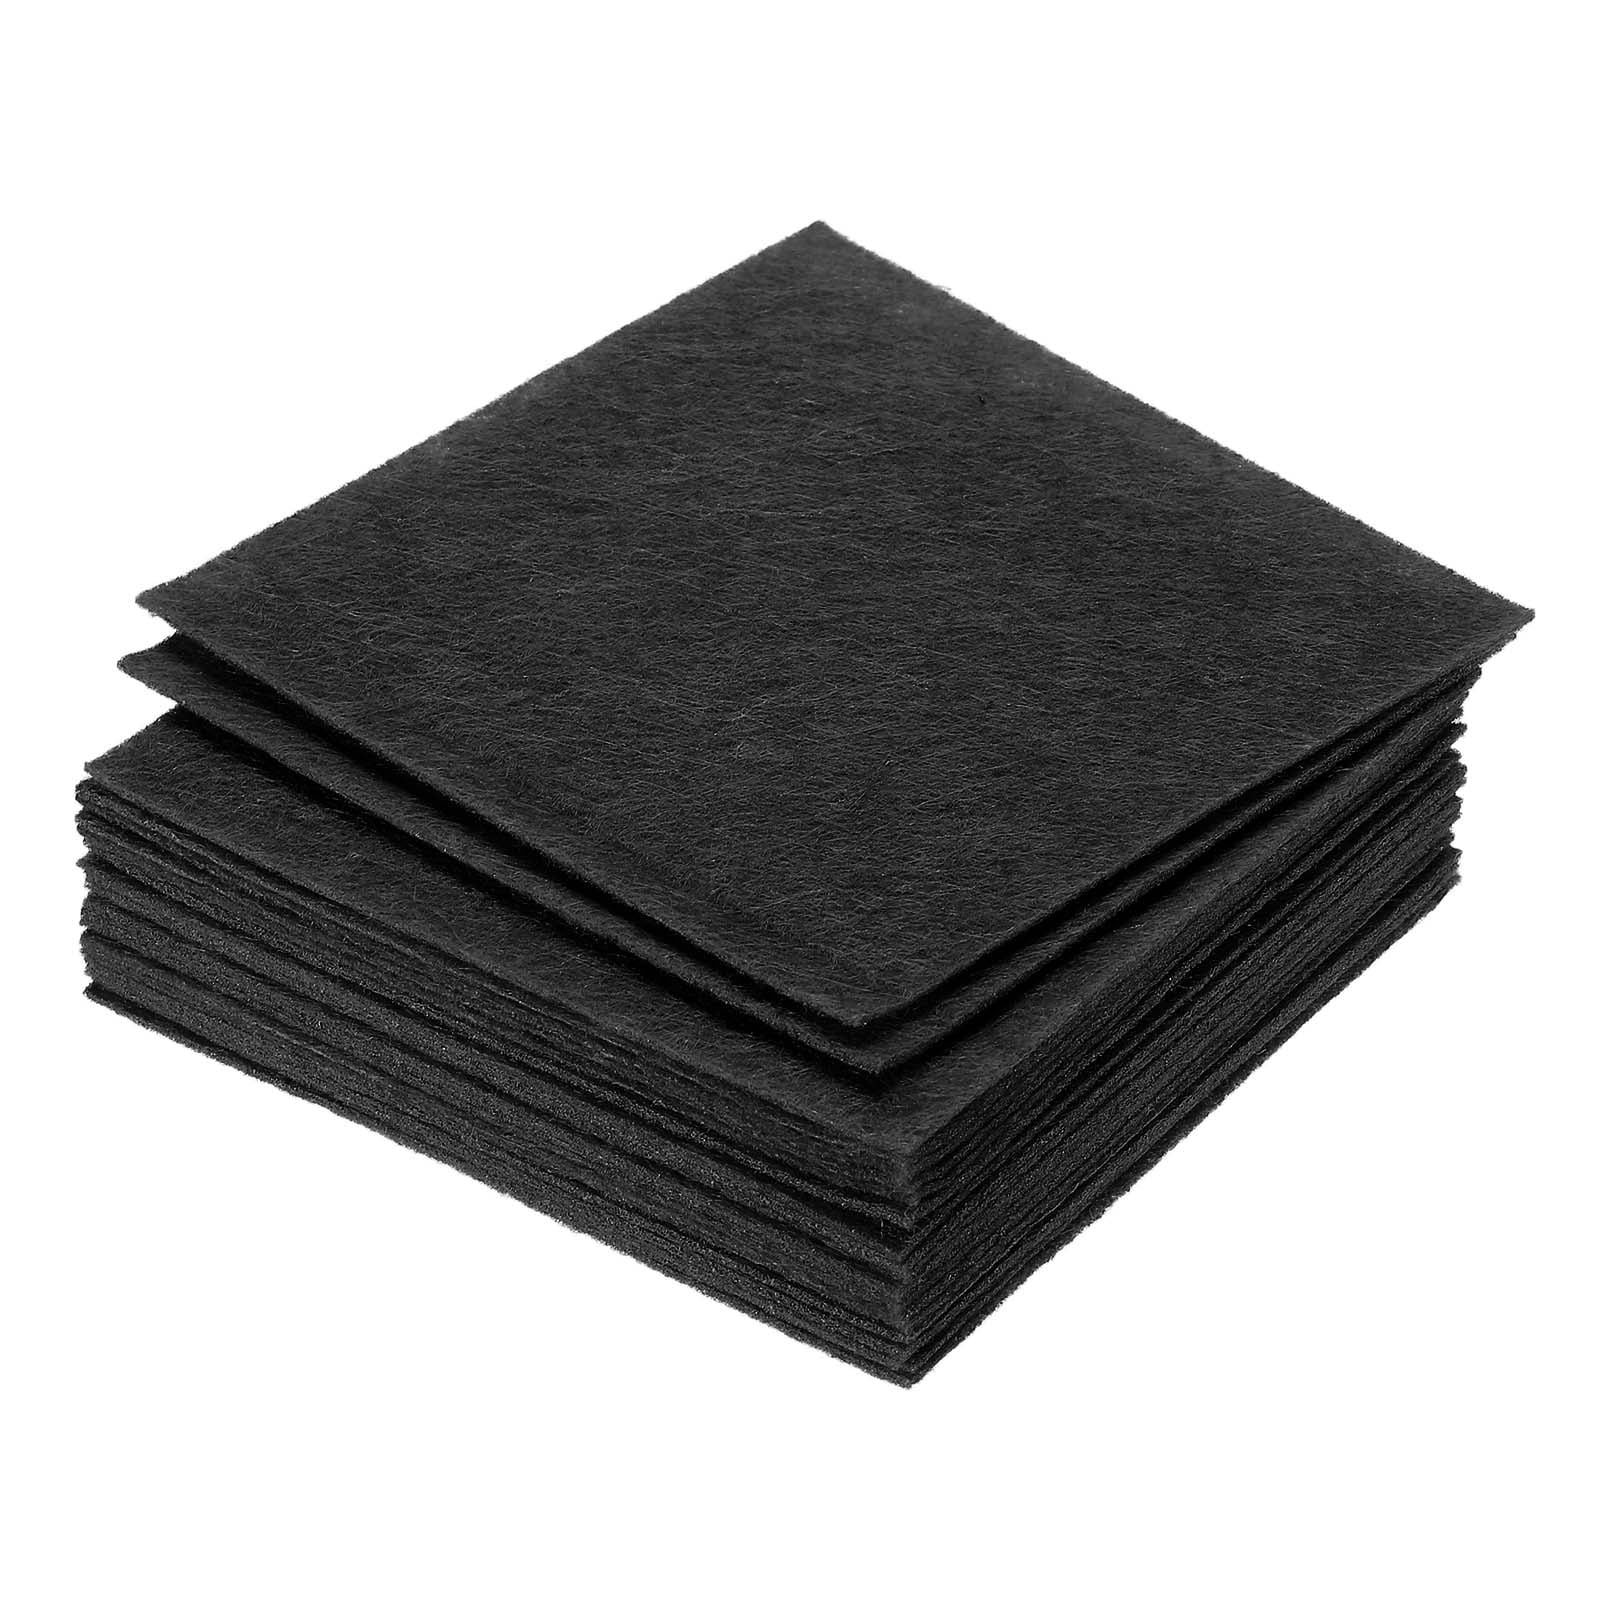 Premium Felt Sheets 10 Pack - 12 x 12 -Melon - Soft Wool-Like 1.2mm